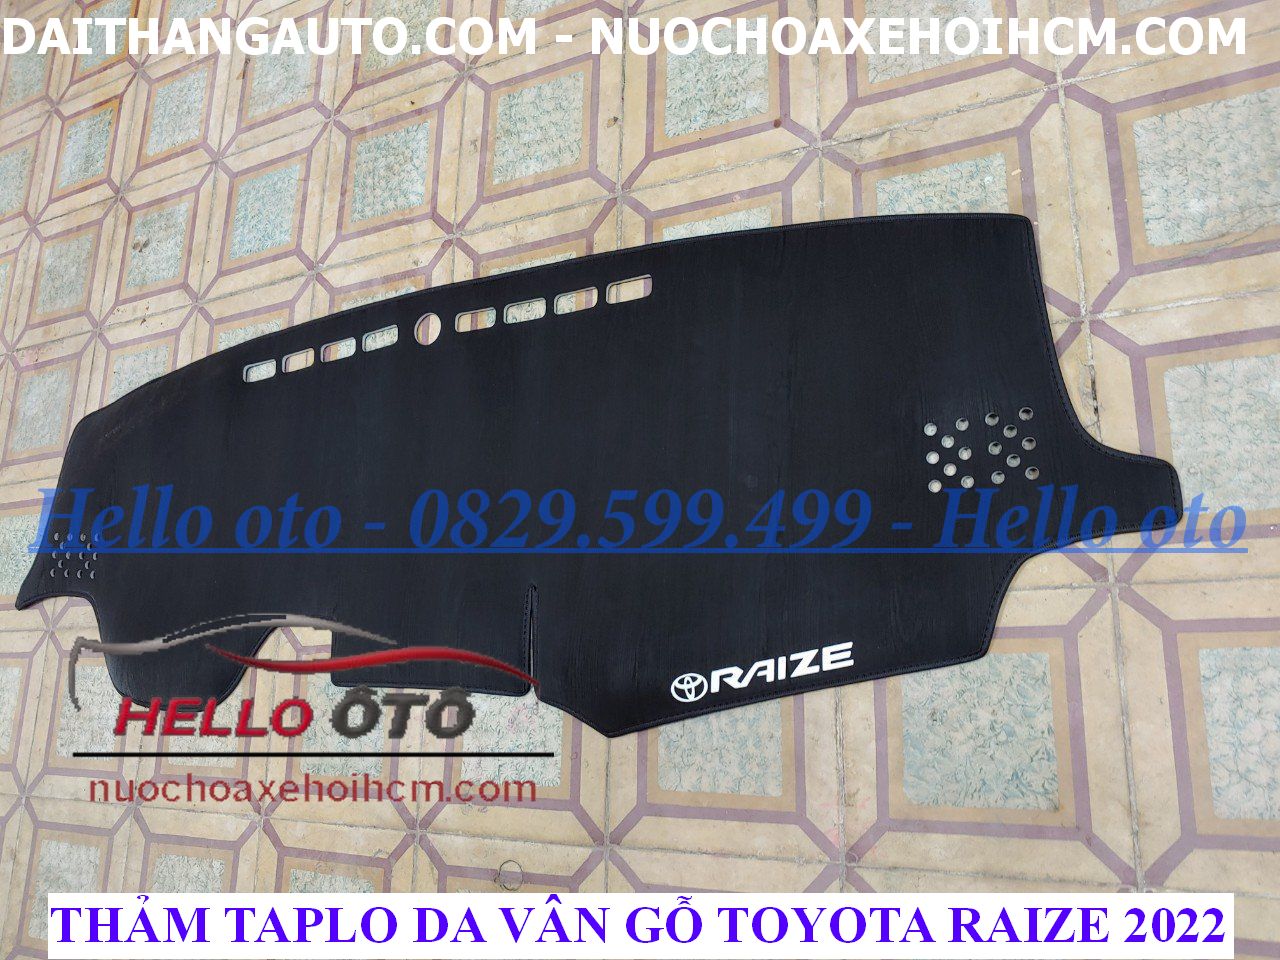 Thảm Taplo Da Vân Gỗ Chống Nắng Toyota Raize 2022